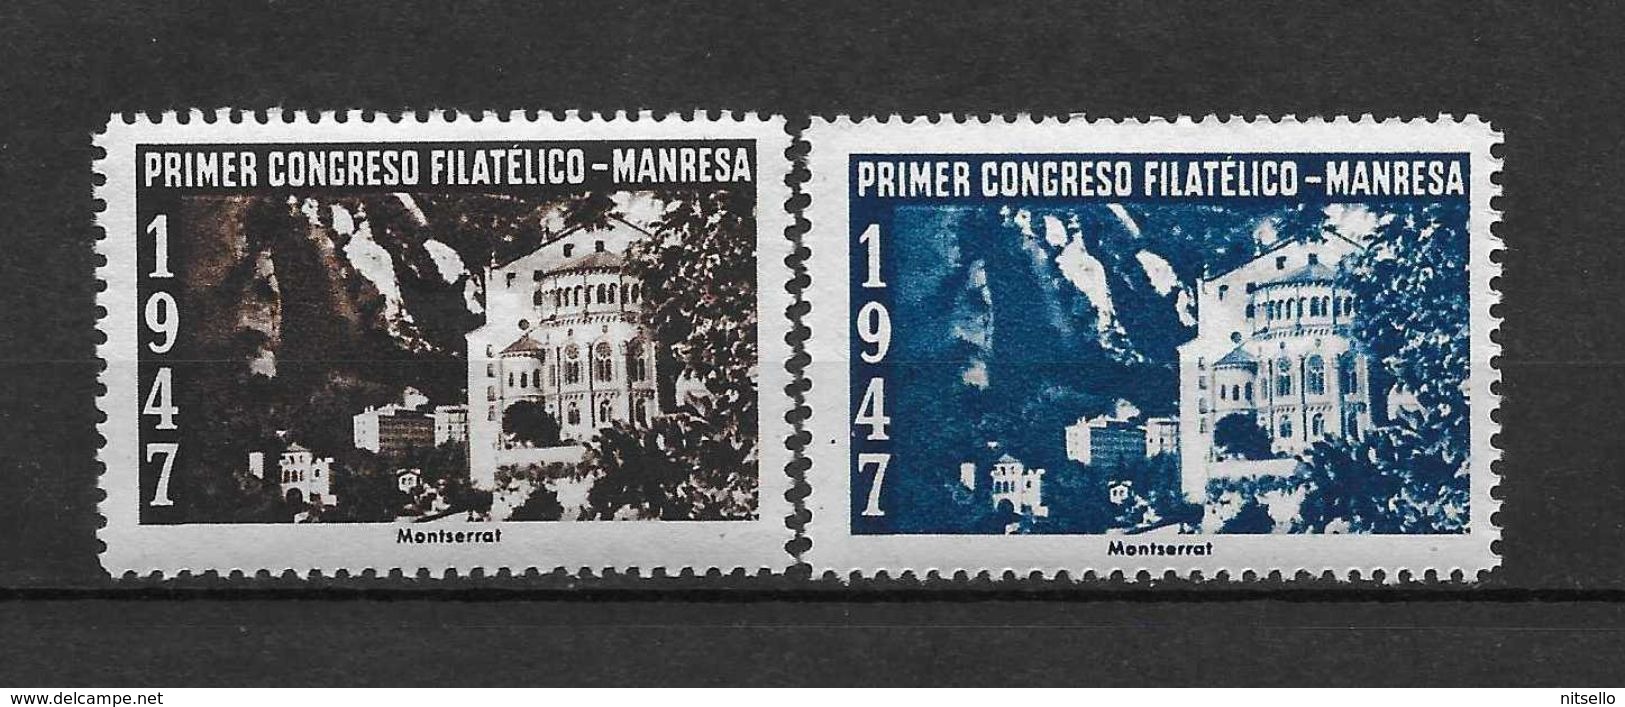 LOTE 1383  ///  PRIMER CONGRESO FILATELICO  MANRESA 1947 **MNH  LUXE        ¡¡¡¡¡¡ LIQUIDATION !!!!!!! - Nationalistische Ausgaben